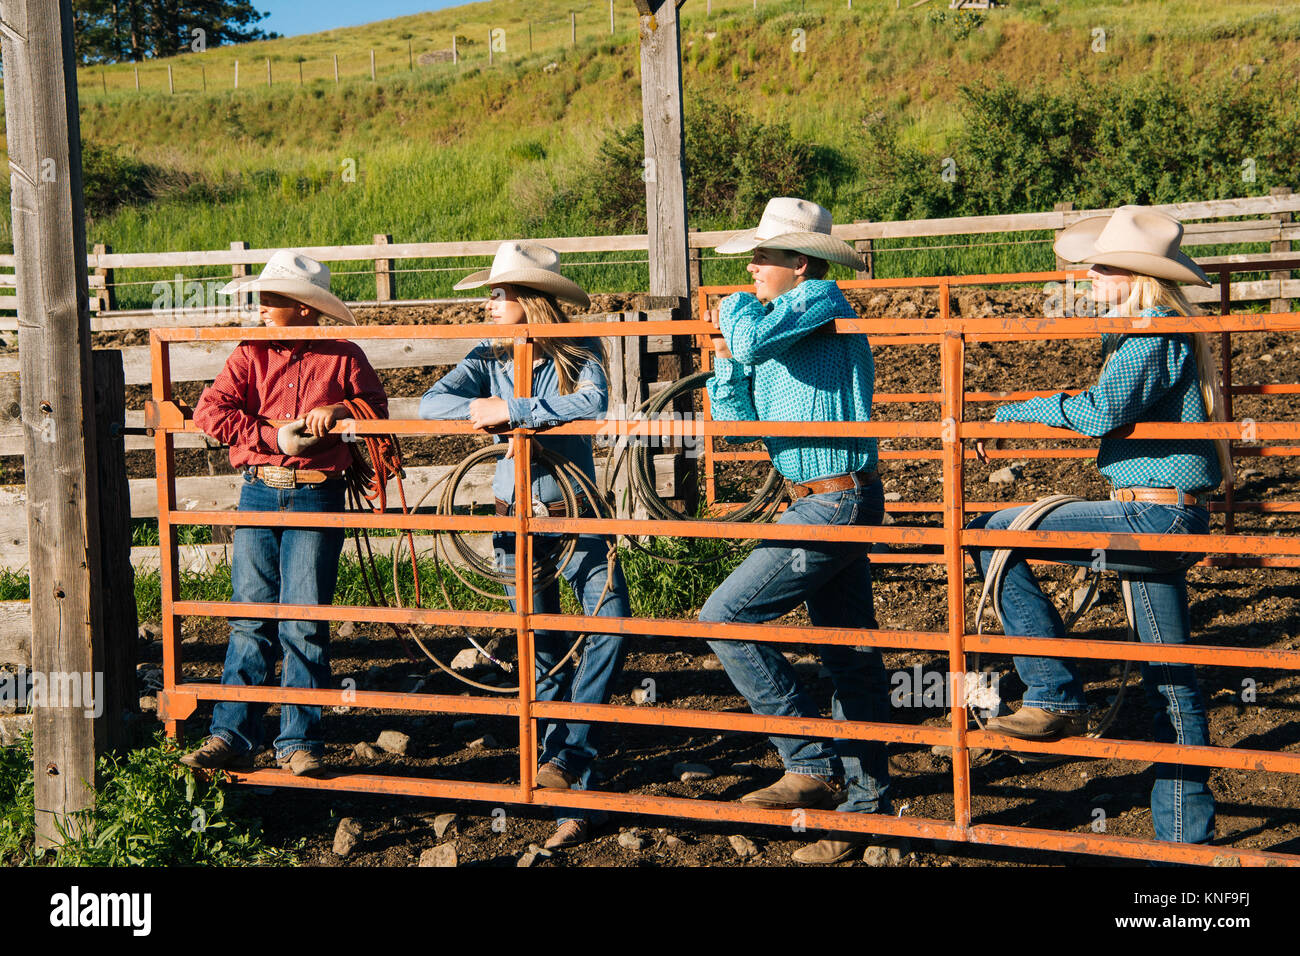 Cowboys et cowgirls leaning on porte, à l'écart, Enterprise, Oregon, United States, Amérique du Nord Banque D'Images